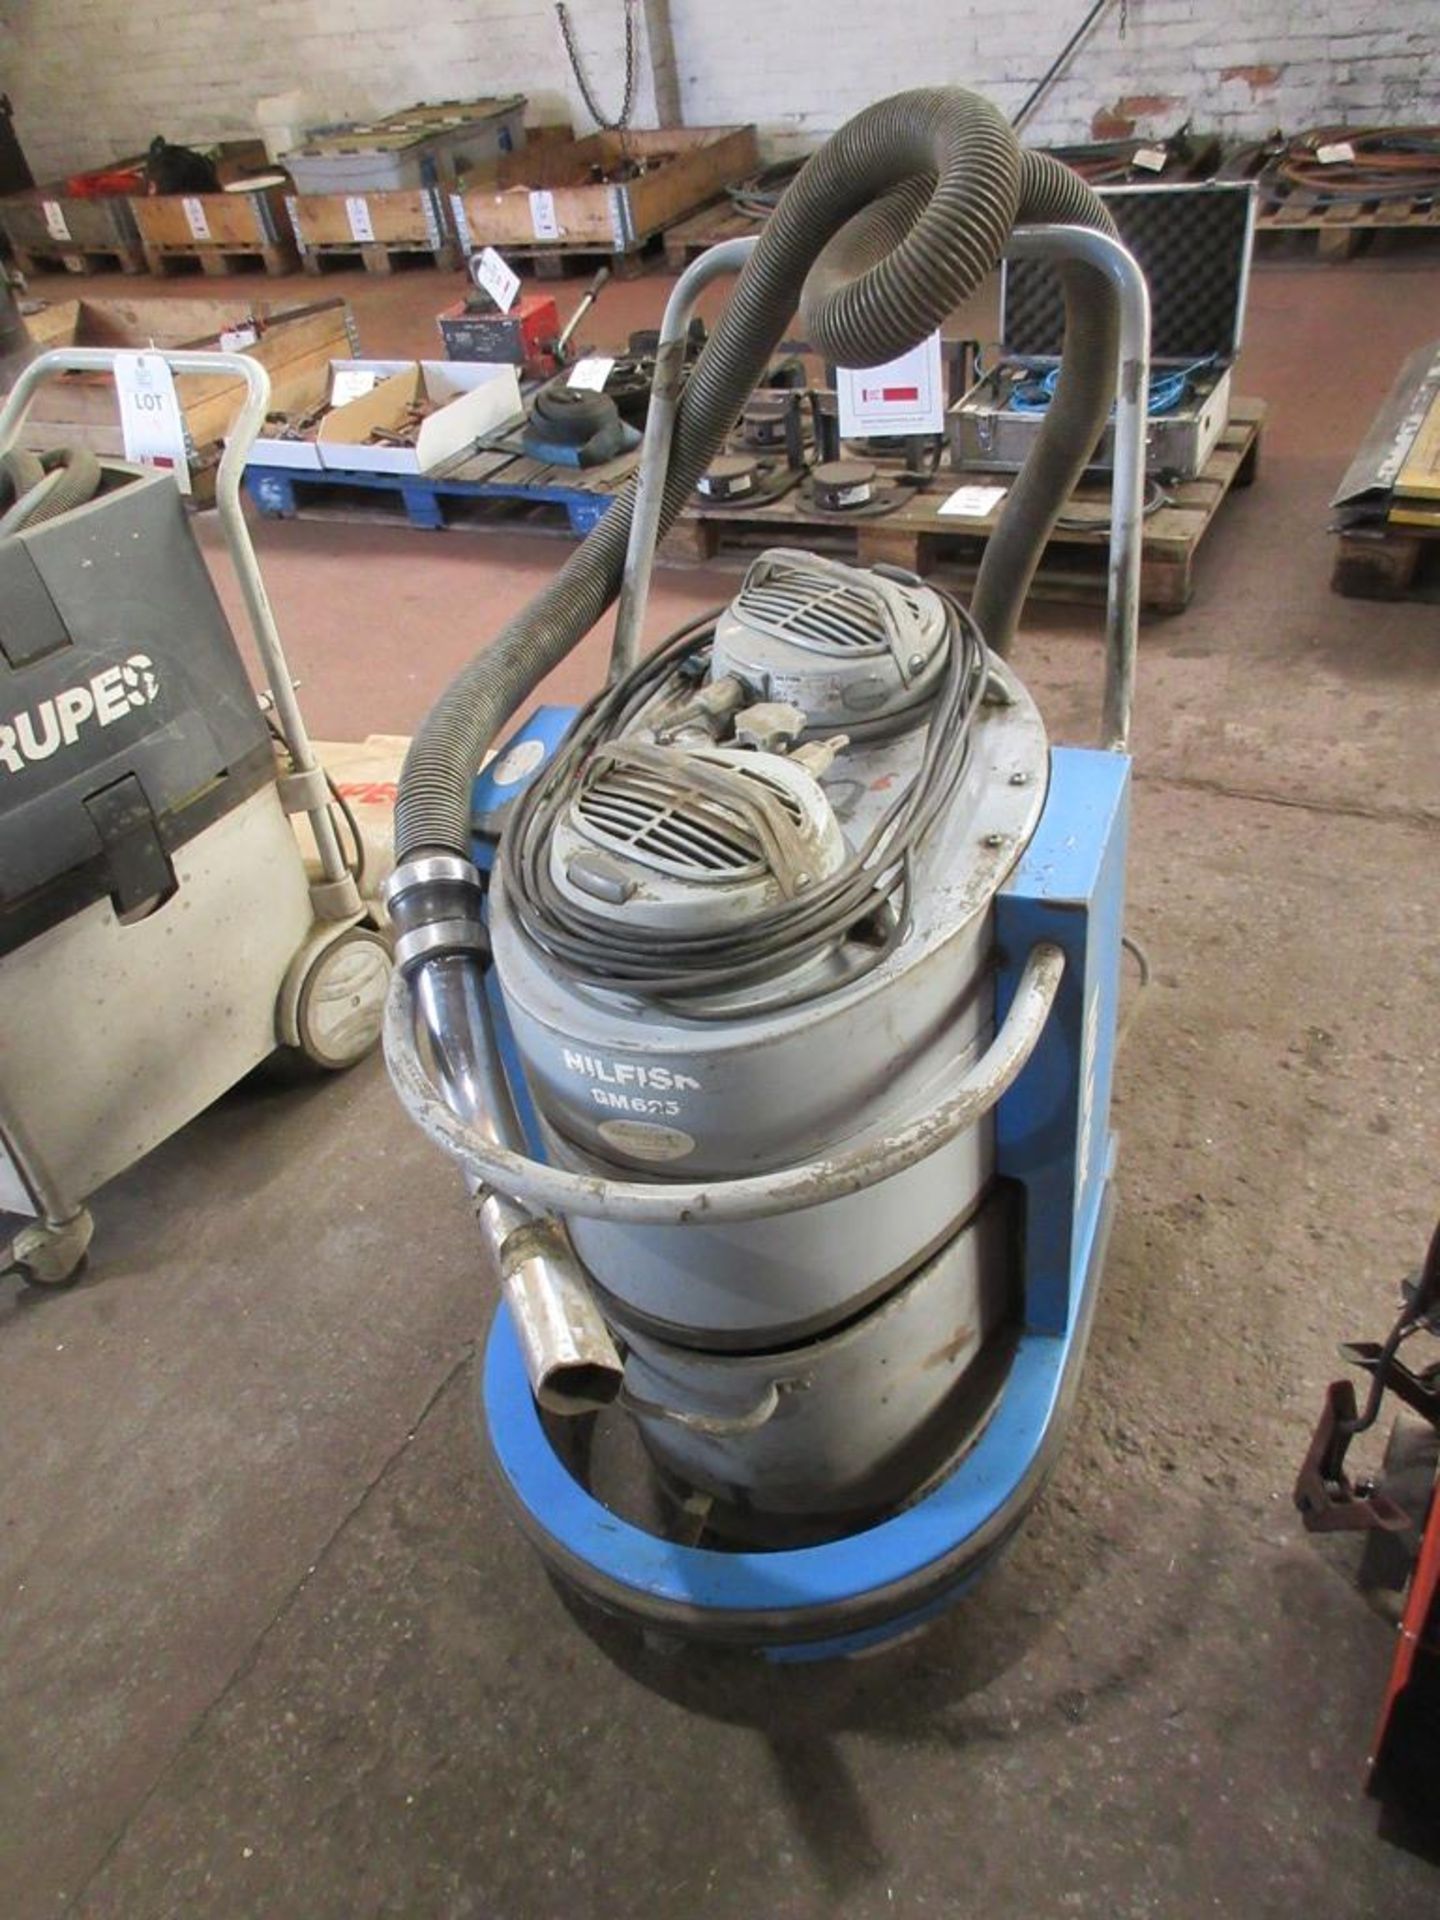 NILFISK vacuum cleaner, Model GM 625 240V - Image 2 of 4